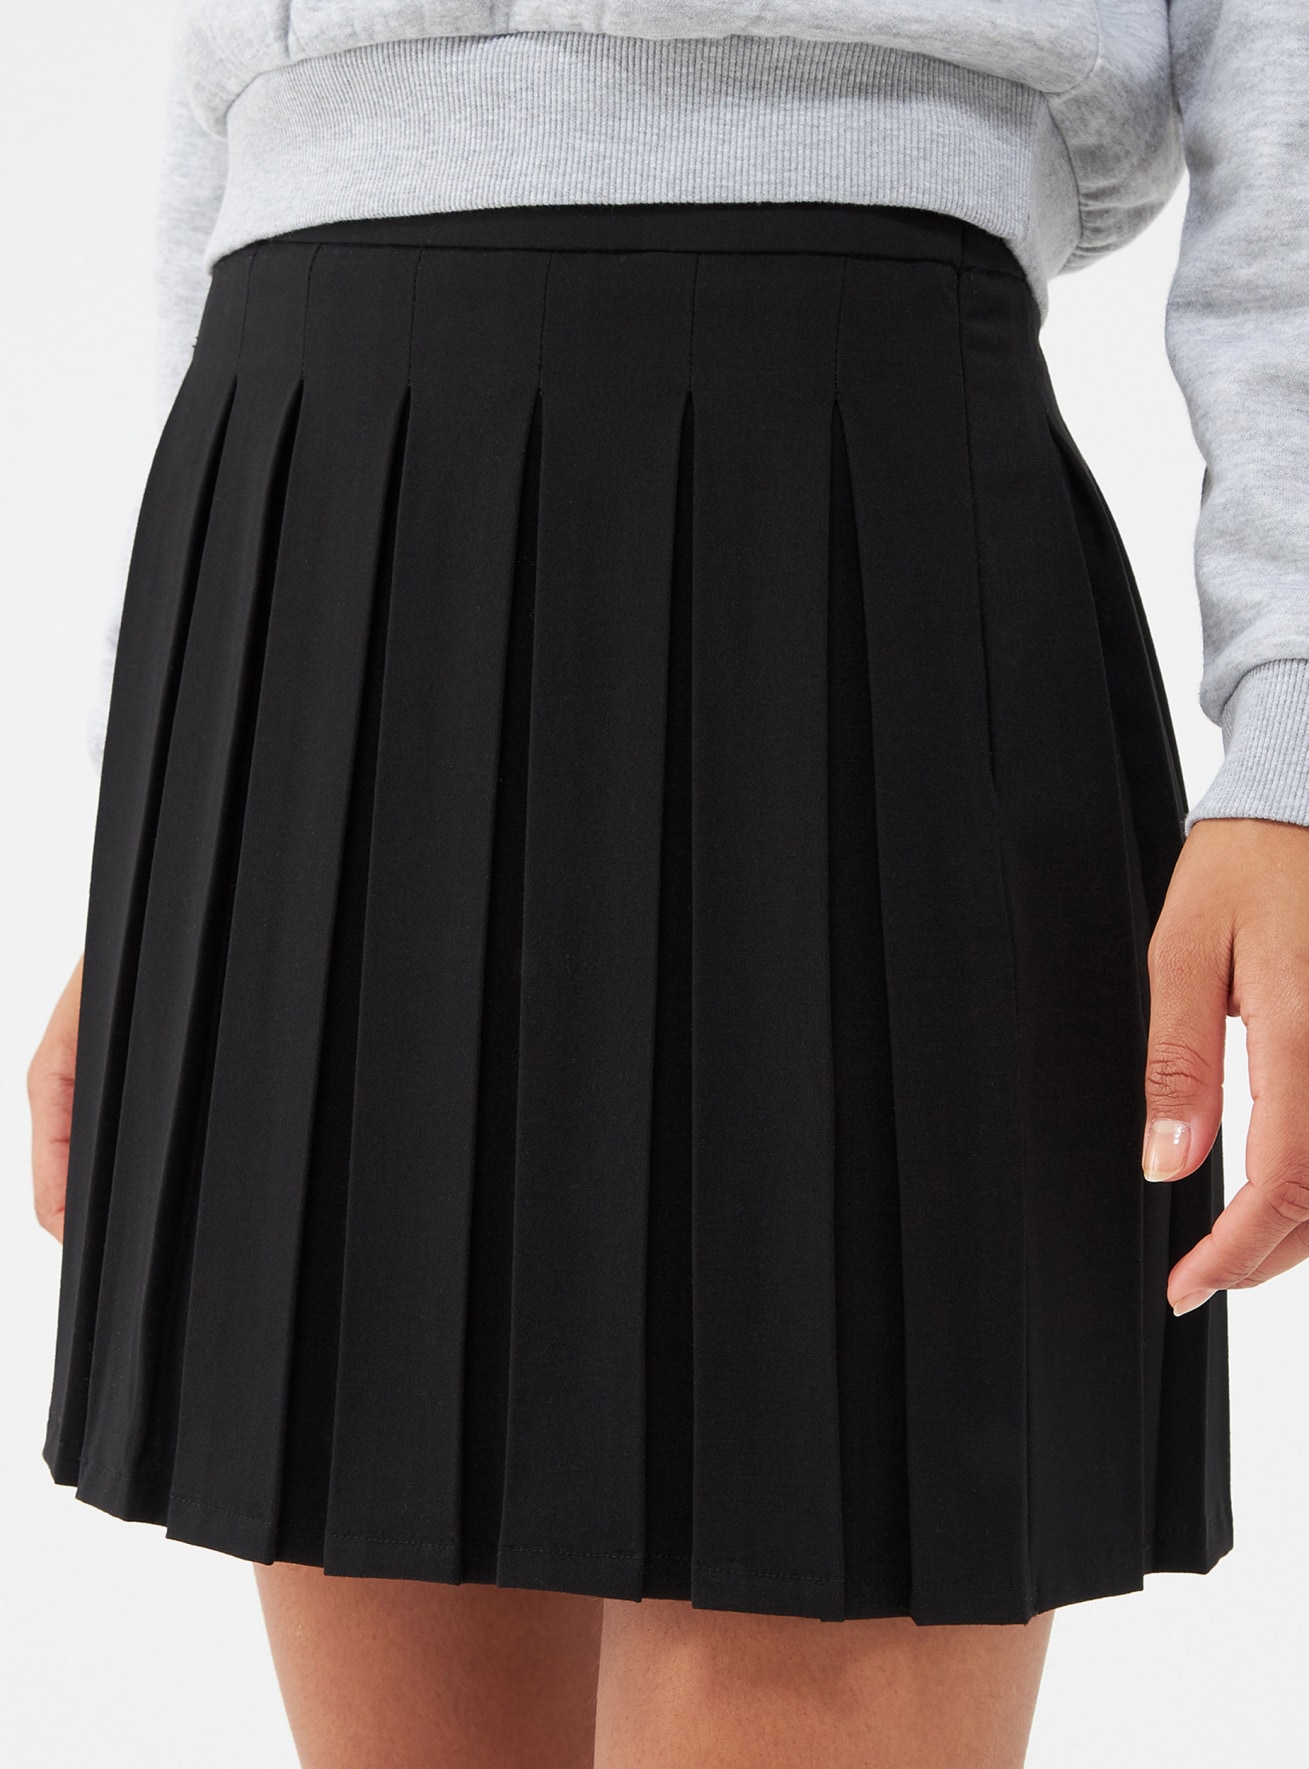 Black Pleated skater skirt - Buy Online